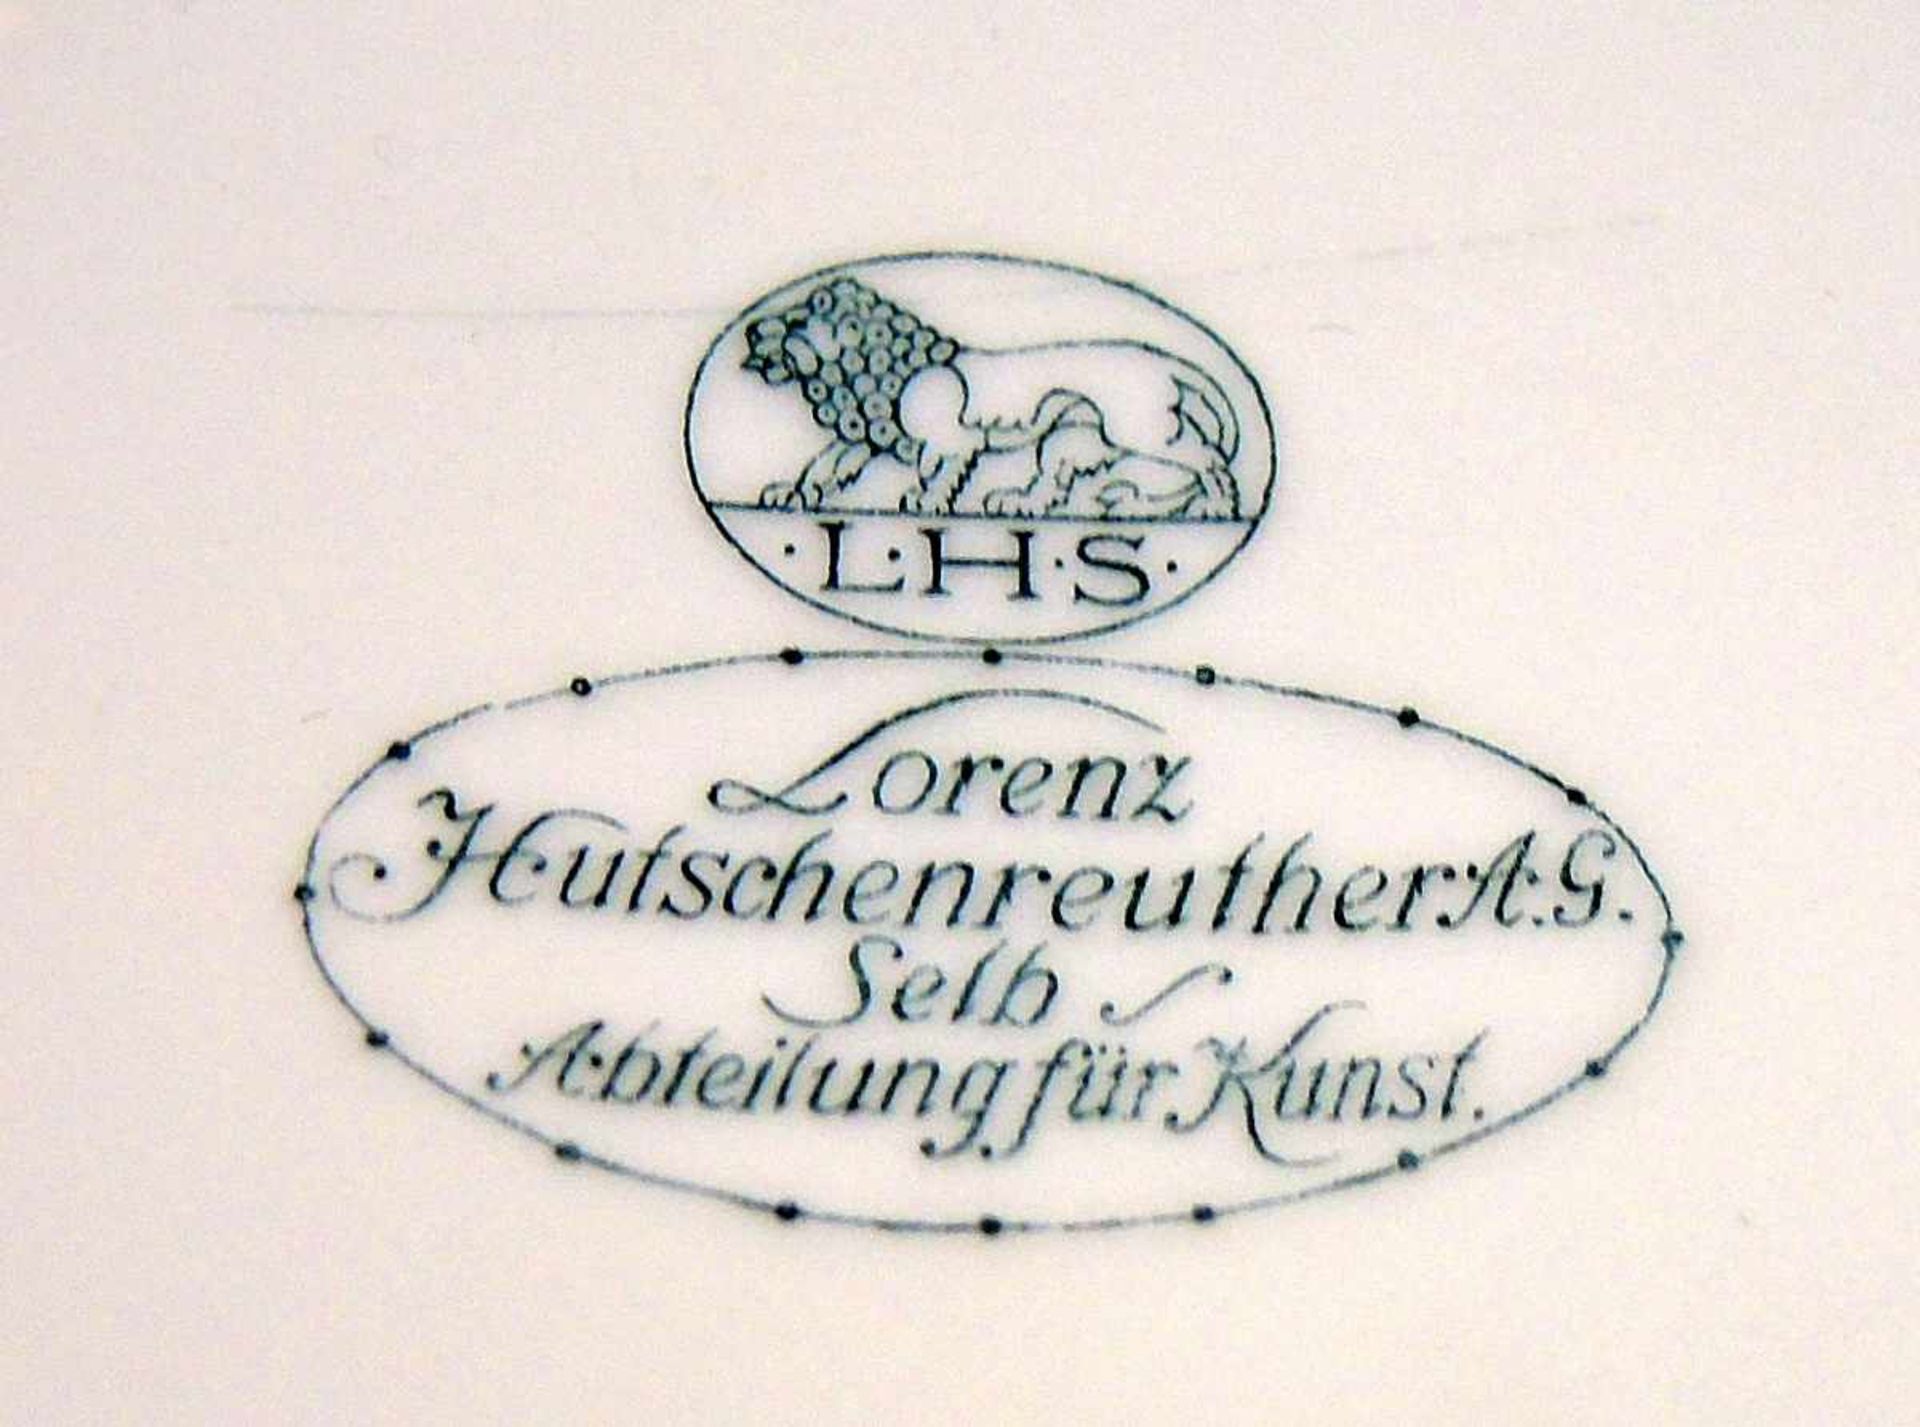 Hutschenreuther, Deckelschale Porzellan, am Boden mit Manufakturmarke gekennzeichnet. Grün bemalt - Bild 2 aus 2